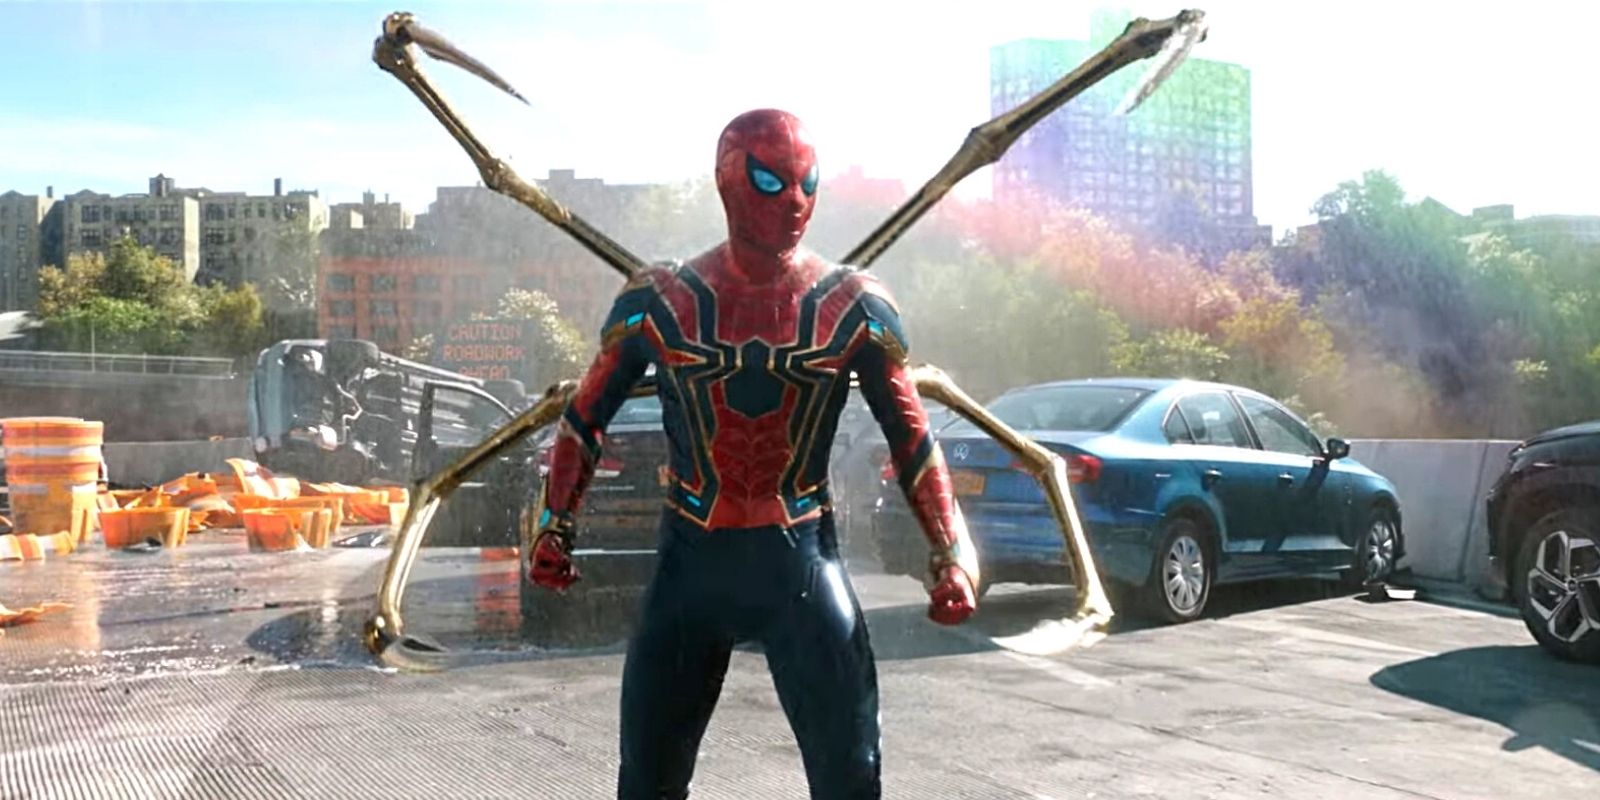 Spider Man in Iron Spider Suit